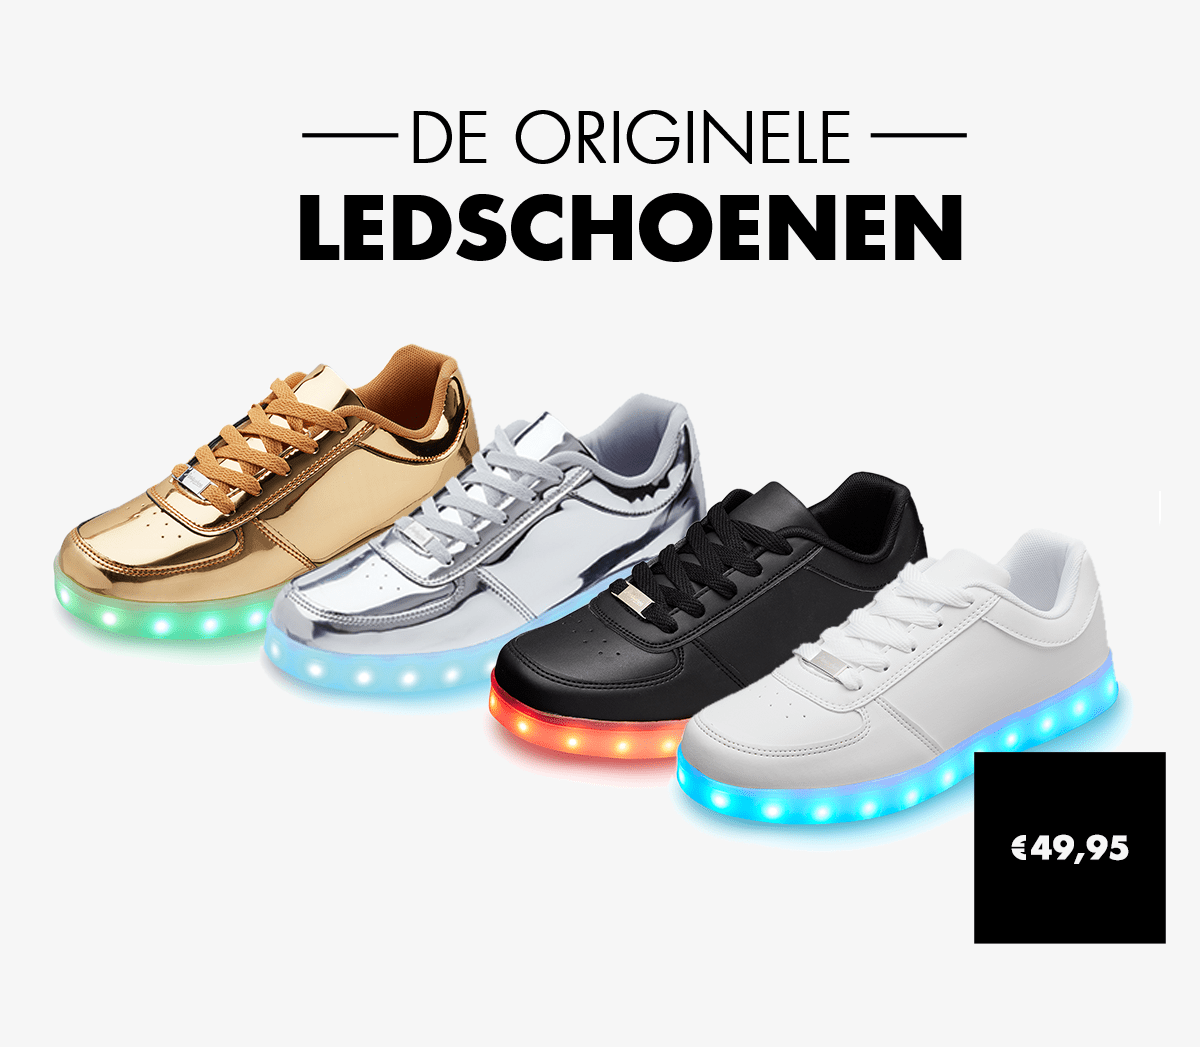 Flash zelf kan zijn Ledschoenen.nl - Schoenen met lichtjes kopen bij ledschoenen.nl